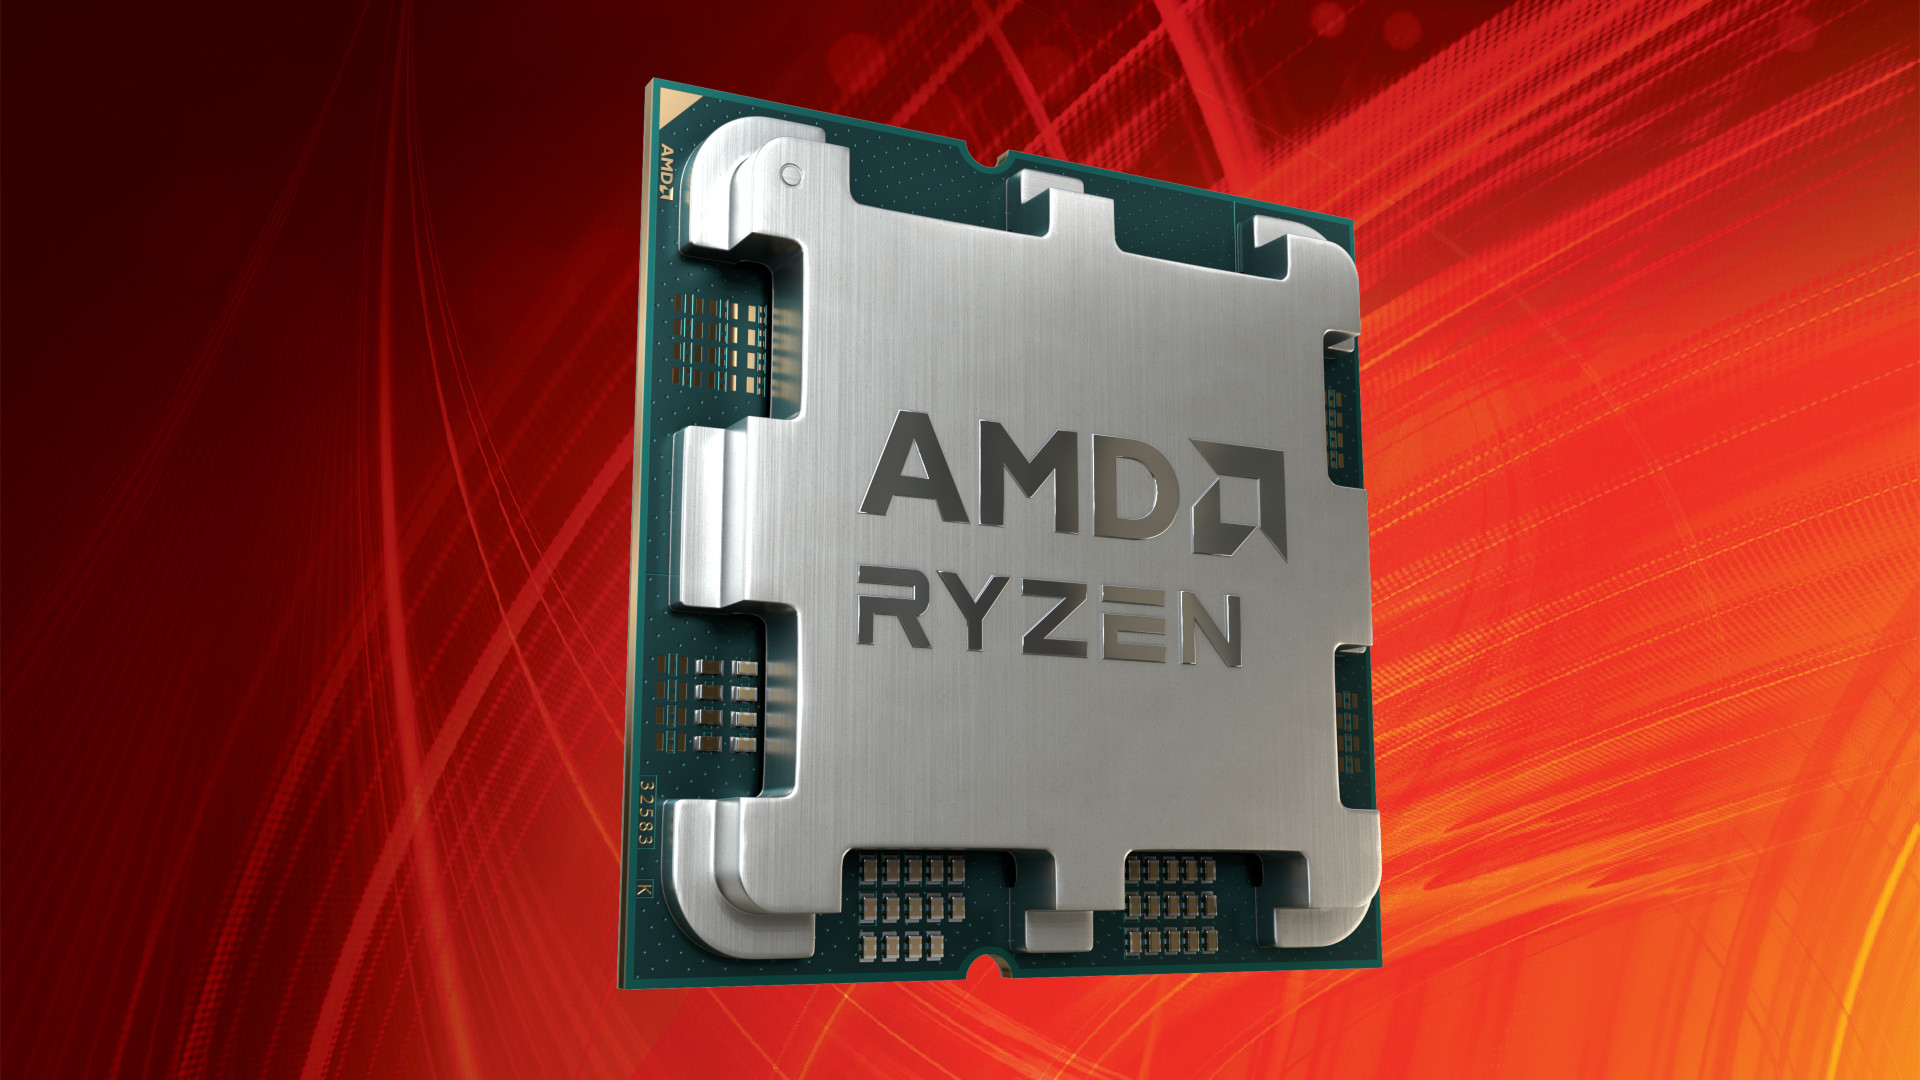 New AMD Ryzen 9000 CPU series appears in Alienware marketing